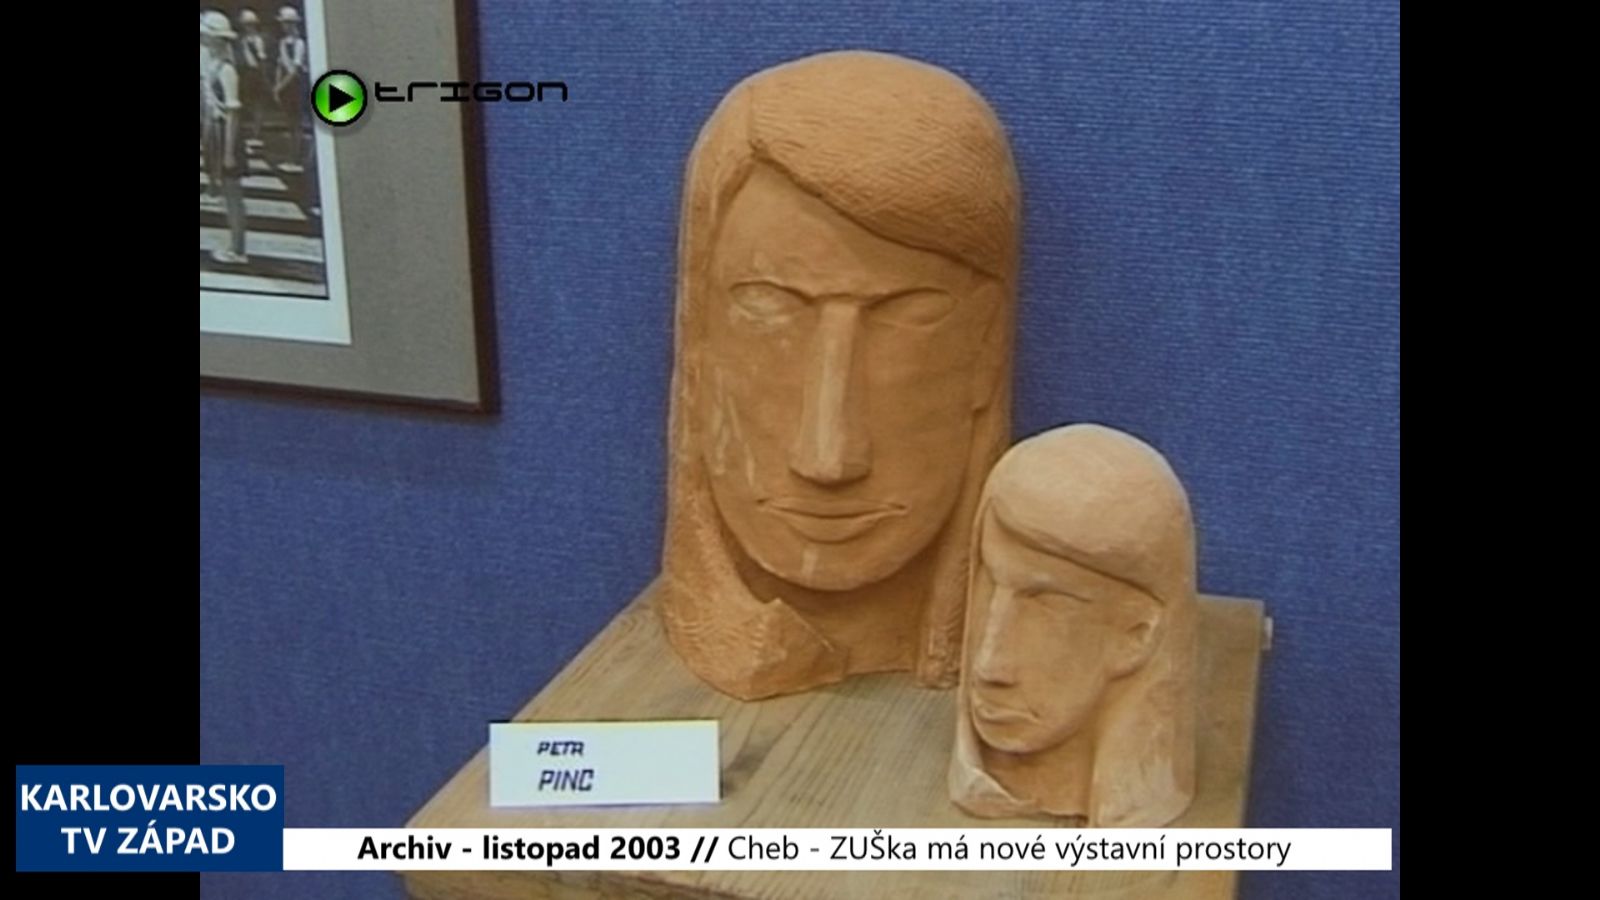 2003 – Cheb: ZUŠka má nové výstavní prostory (TV Západ)